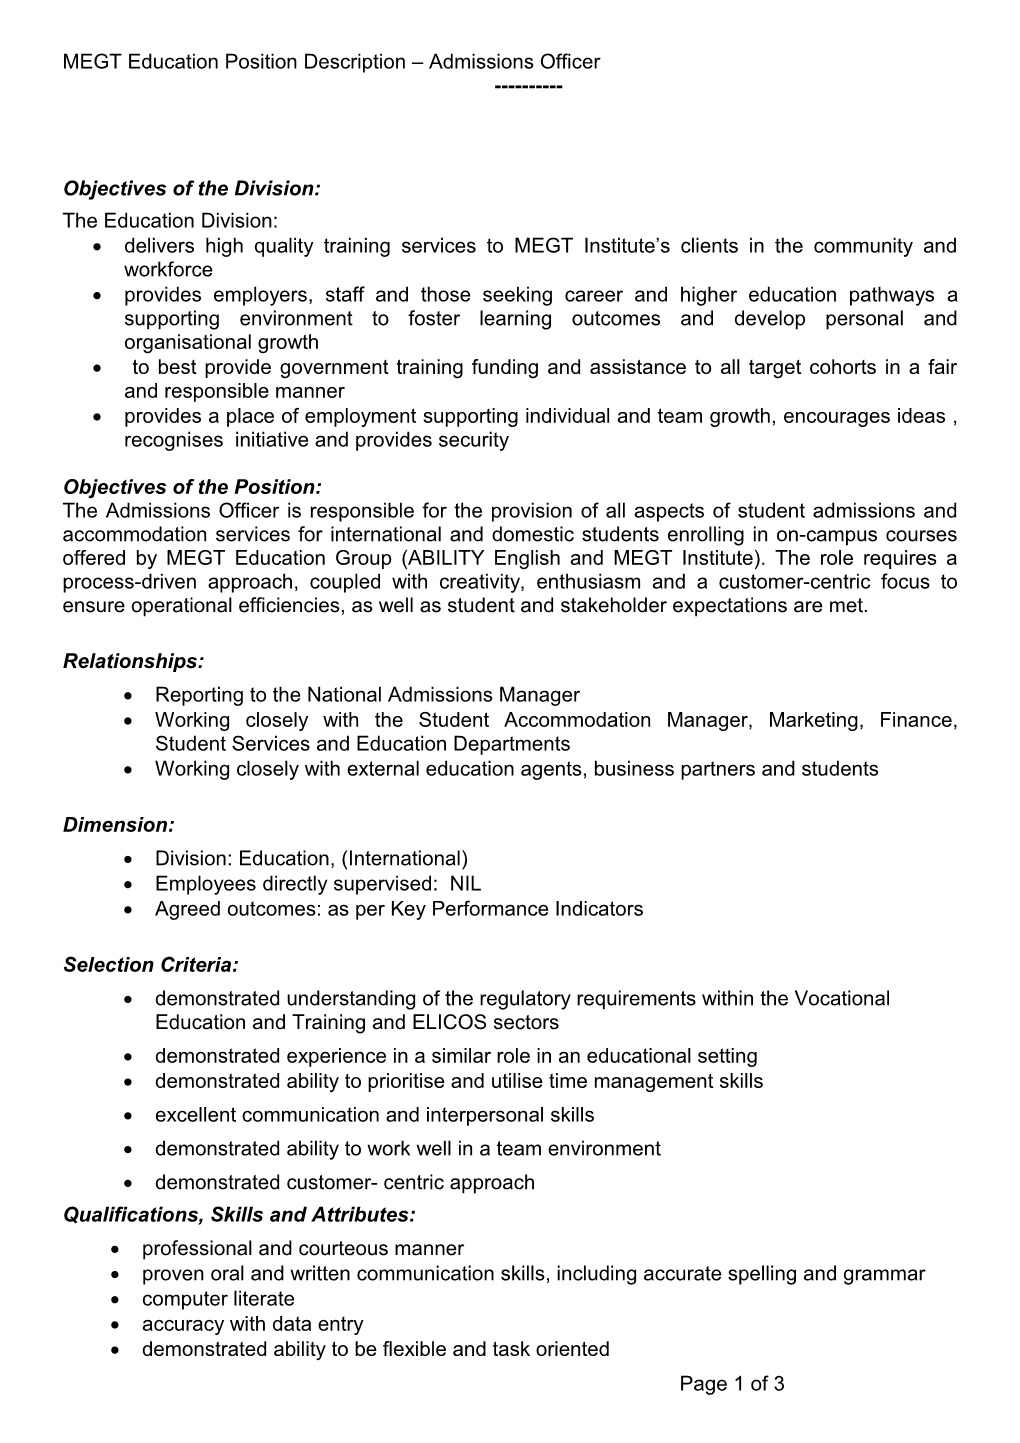 MEGT Education Position Description Admissions Officer